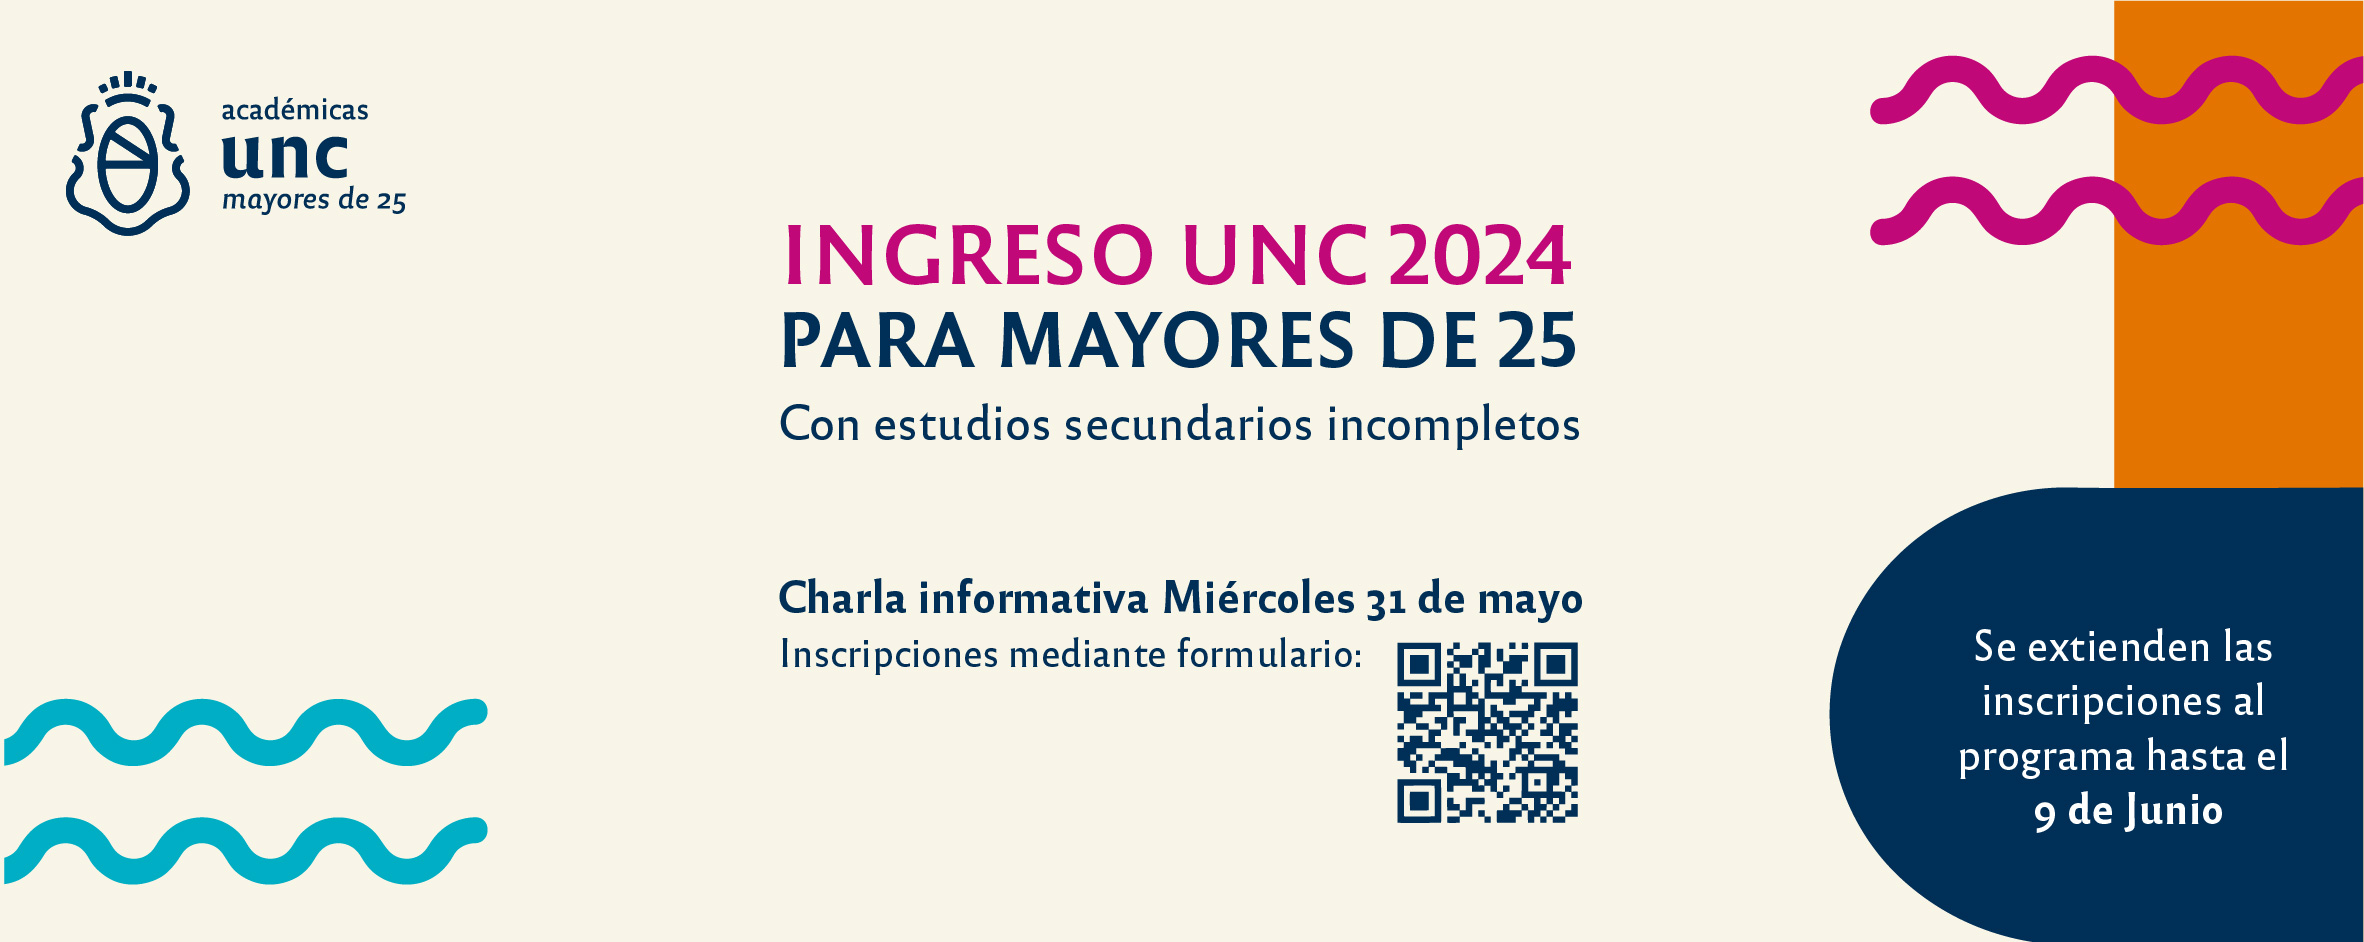 Ingreso UNC 2024 mayores de 25 Universidad Nacional de Córdoba